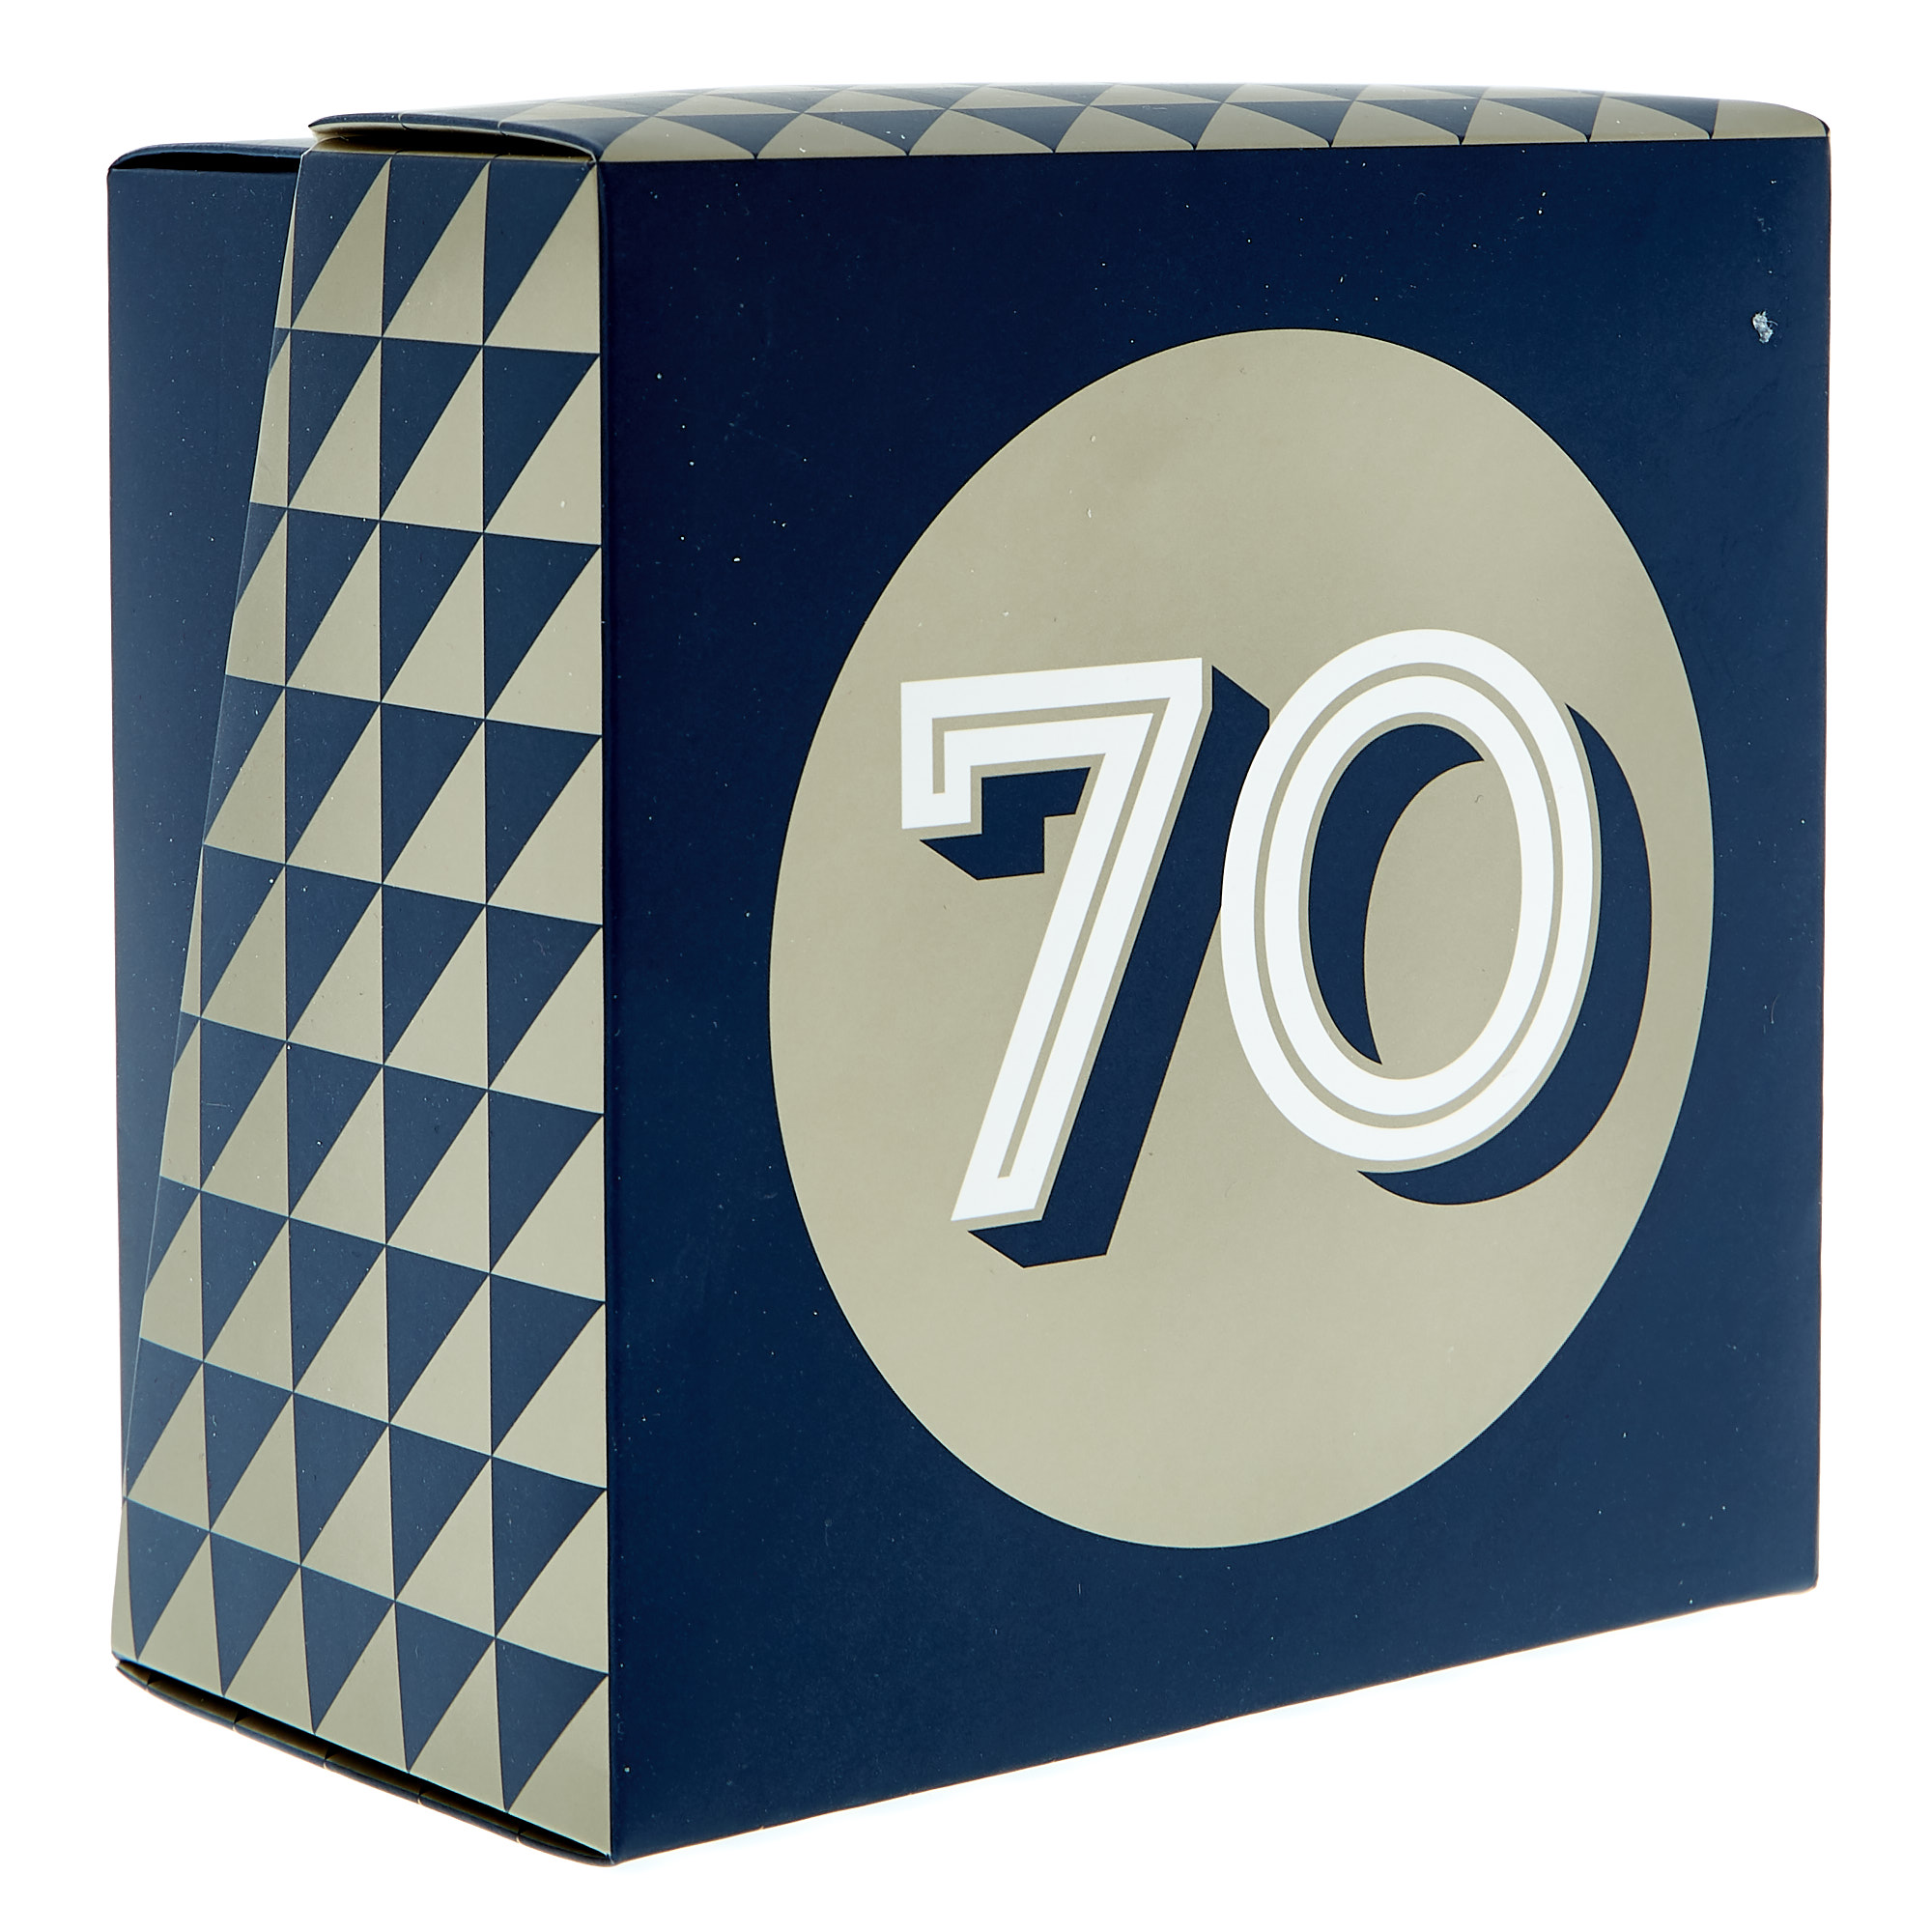 70th Birthday Mug In A Box - Blue & Gold 